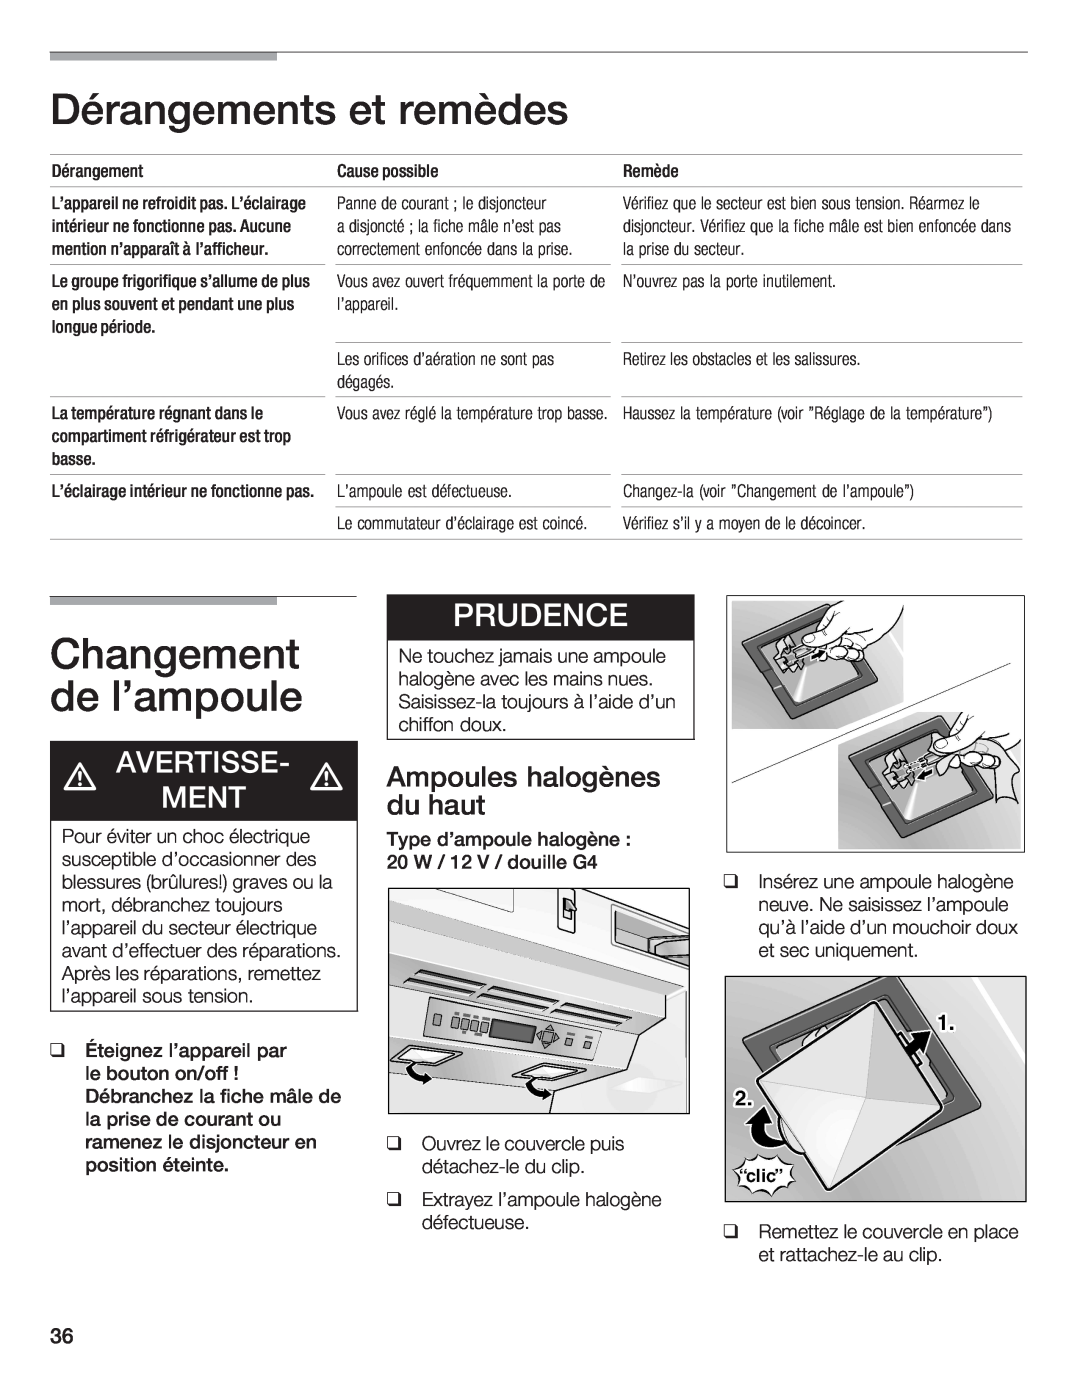 Bosch Appliances B18IW, B24IW manual q q q q q, Dérangement, Cause possible, Léclairage intérieur ne fonctionne pas 